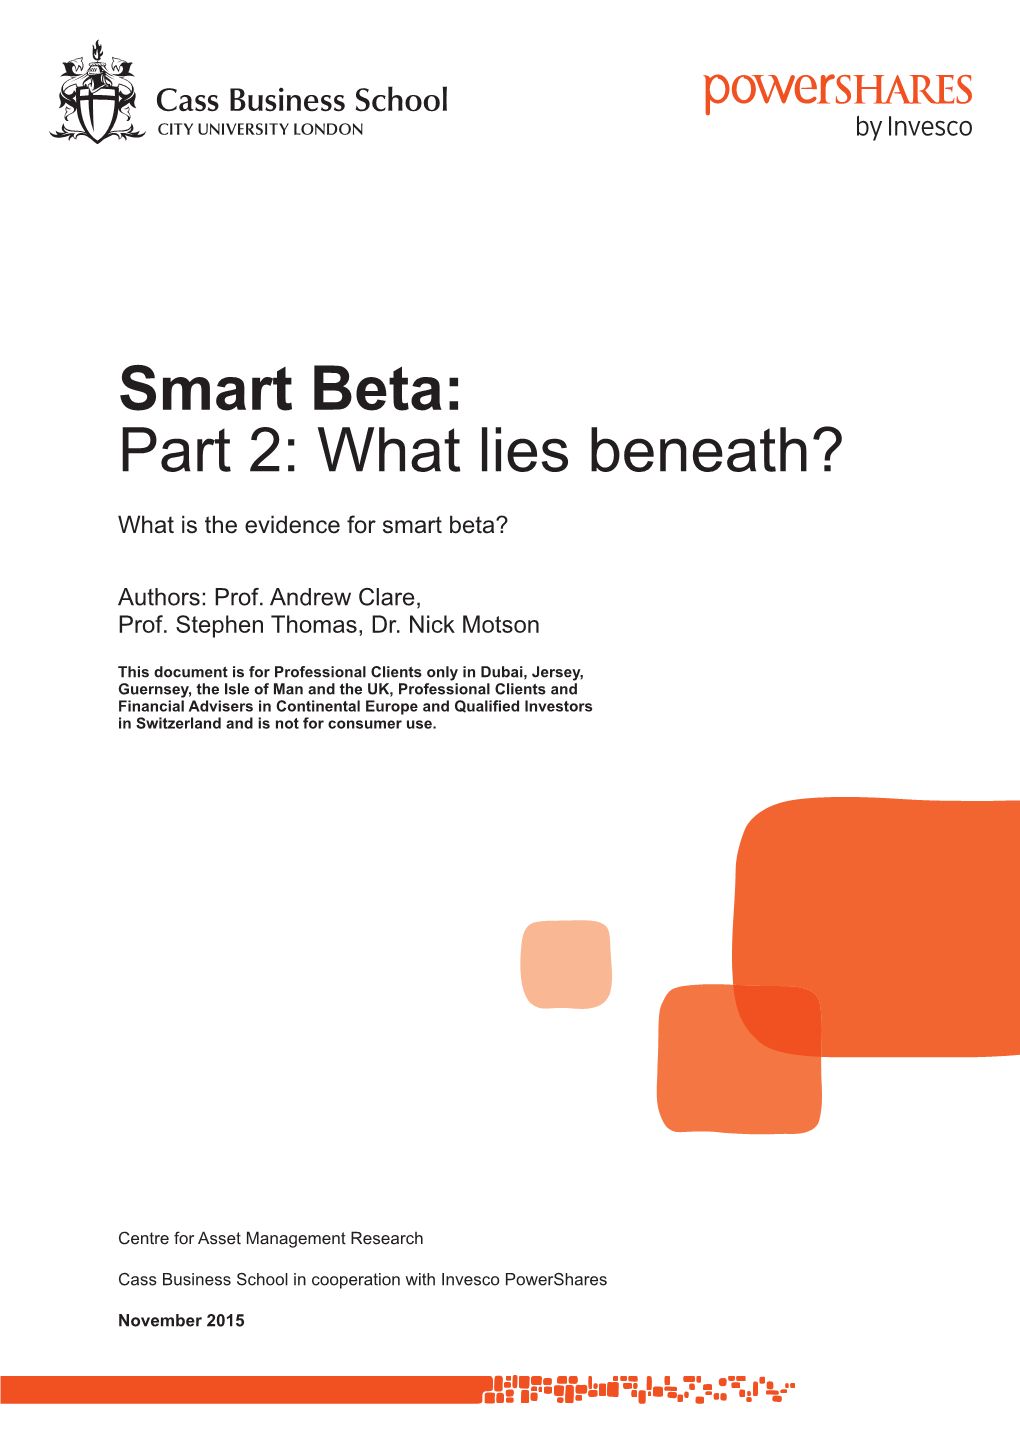 Smart Beta: Part 2: What Lies Beneath – Cass Business School